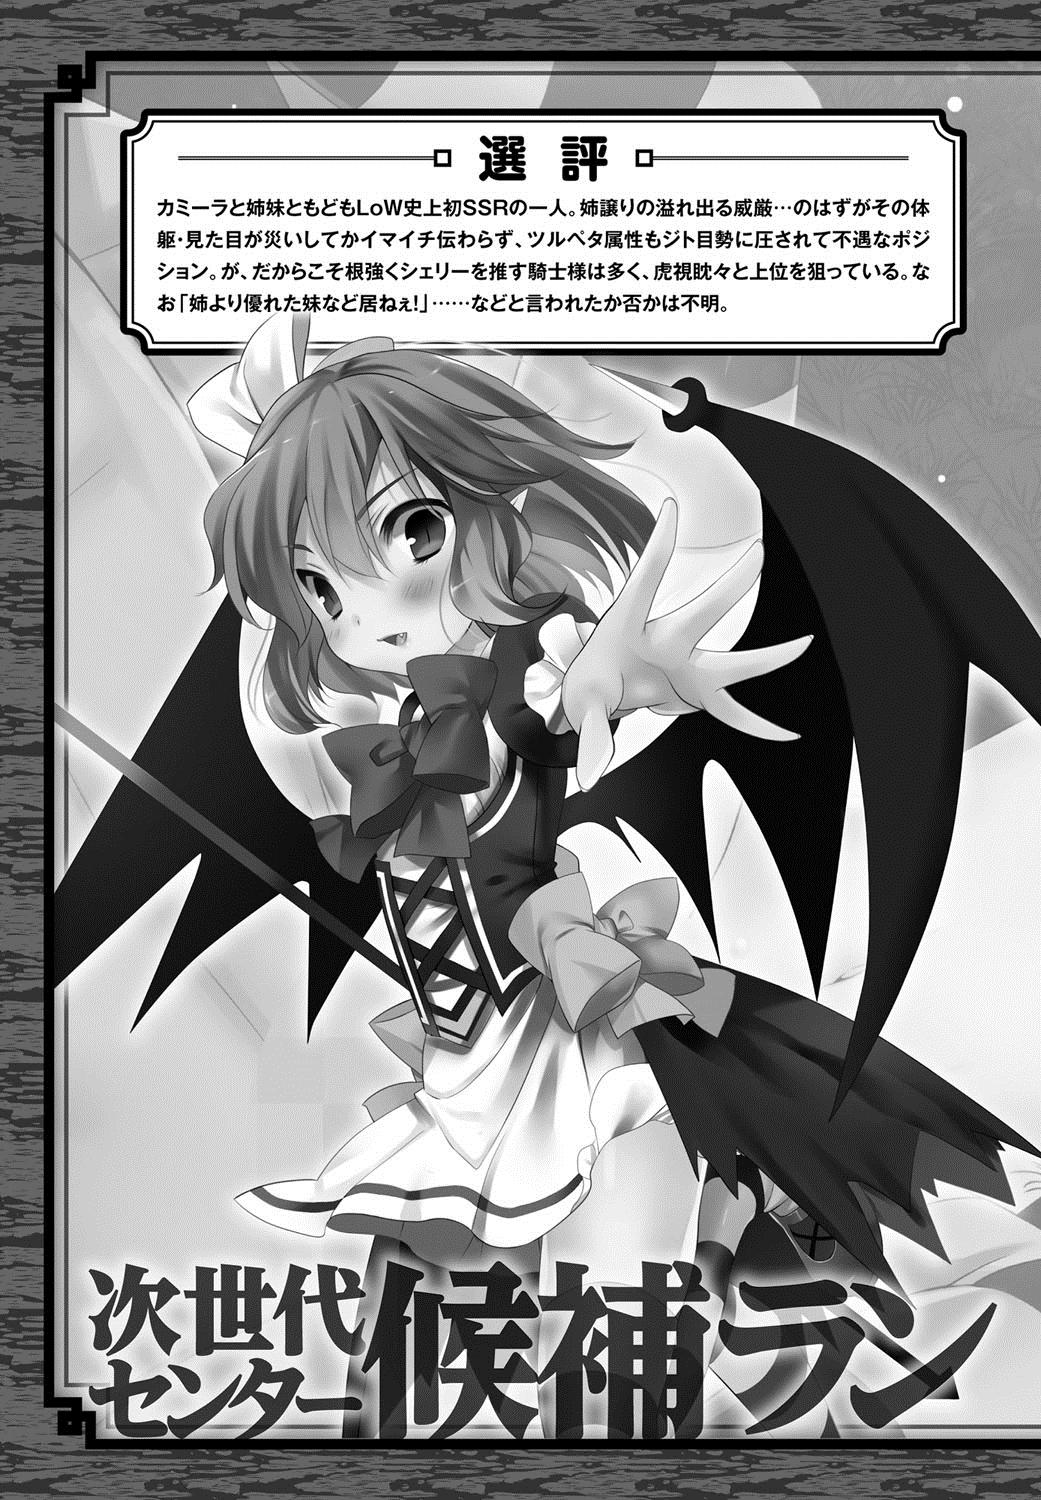 [Anthology] Lord of Valkyrie Adult - Comic Anthology R18 Handakara Saigomade... Mou, Kishi-sama no Ecchi♪ 125